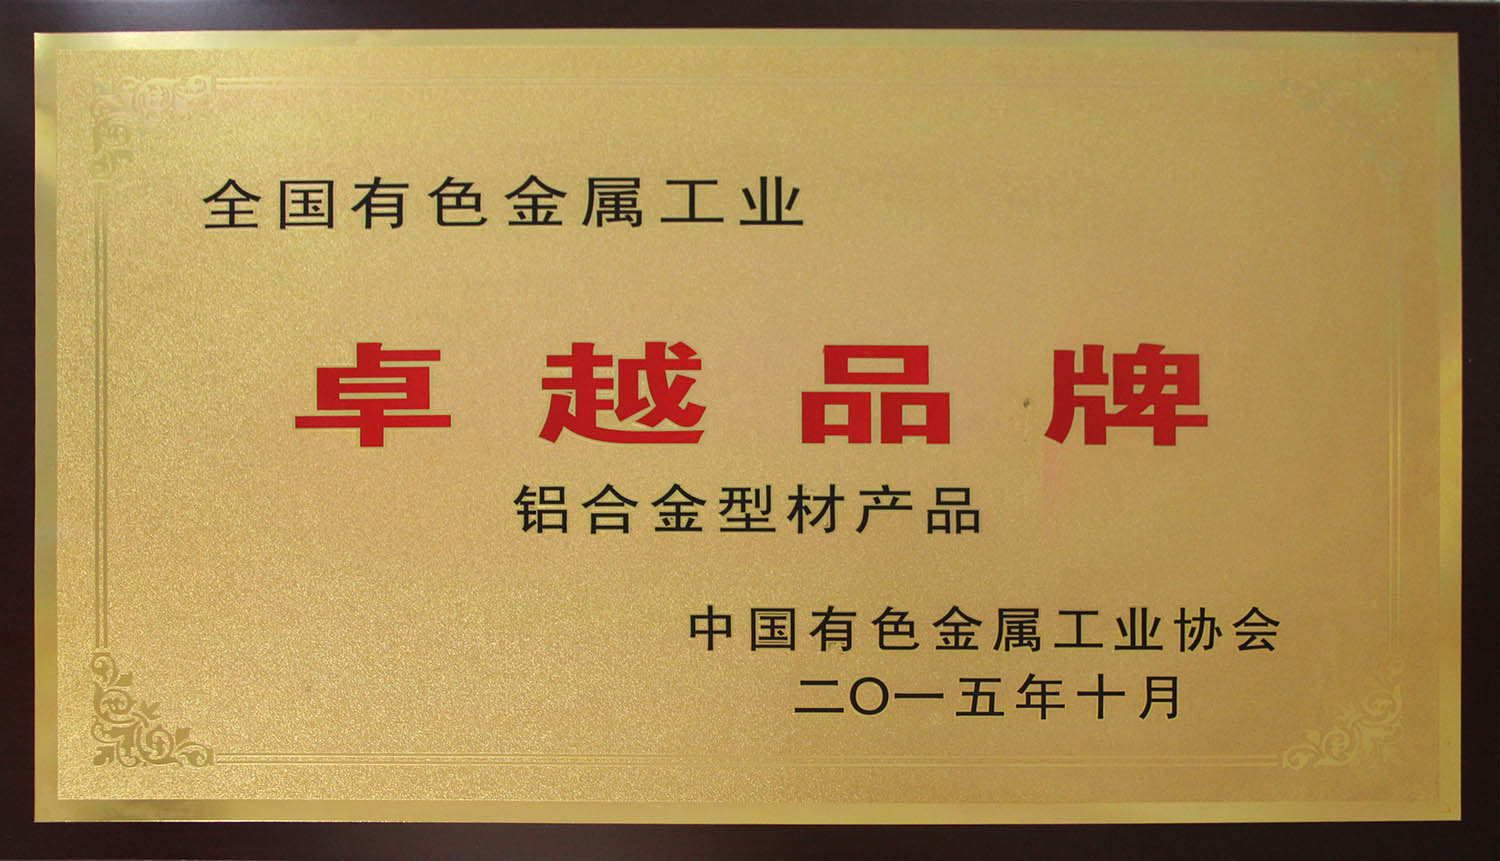 中国有色金属工业协会颁发的“卓越品牌”产品称号